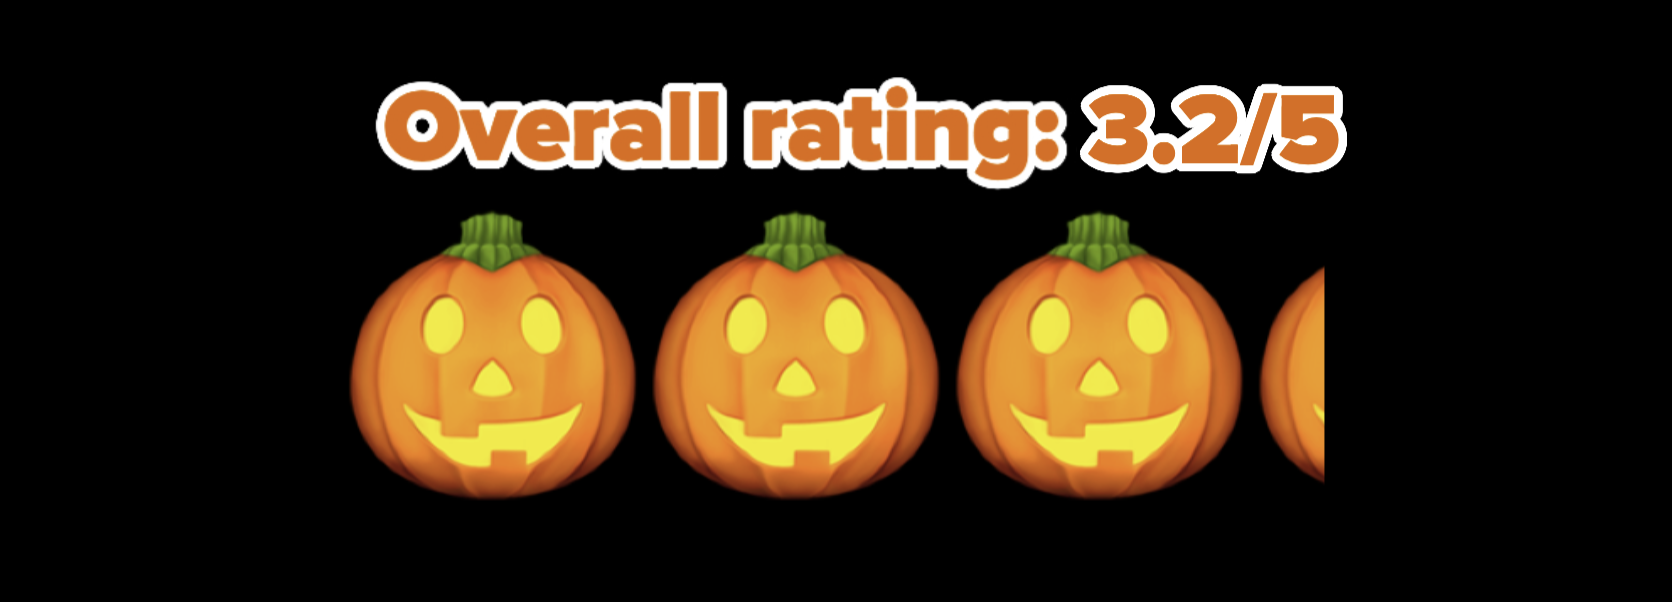 3.2/5 pumpkin rating